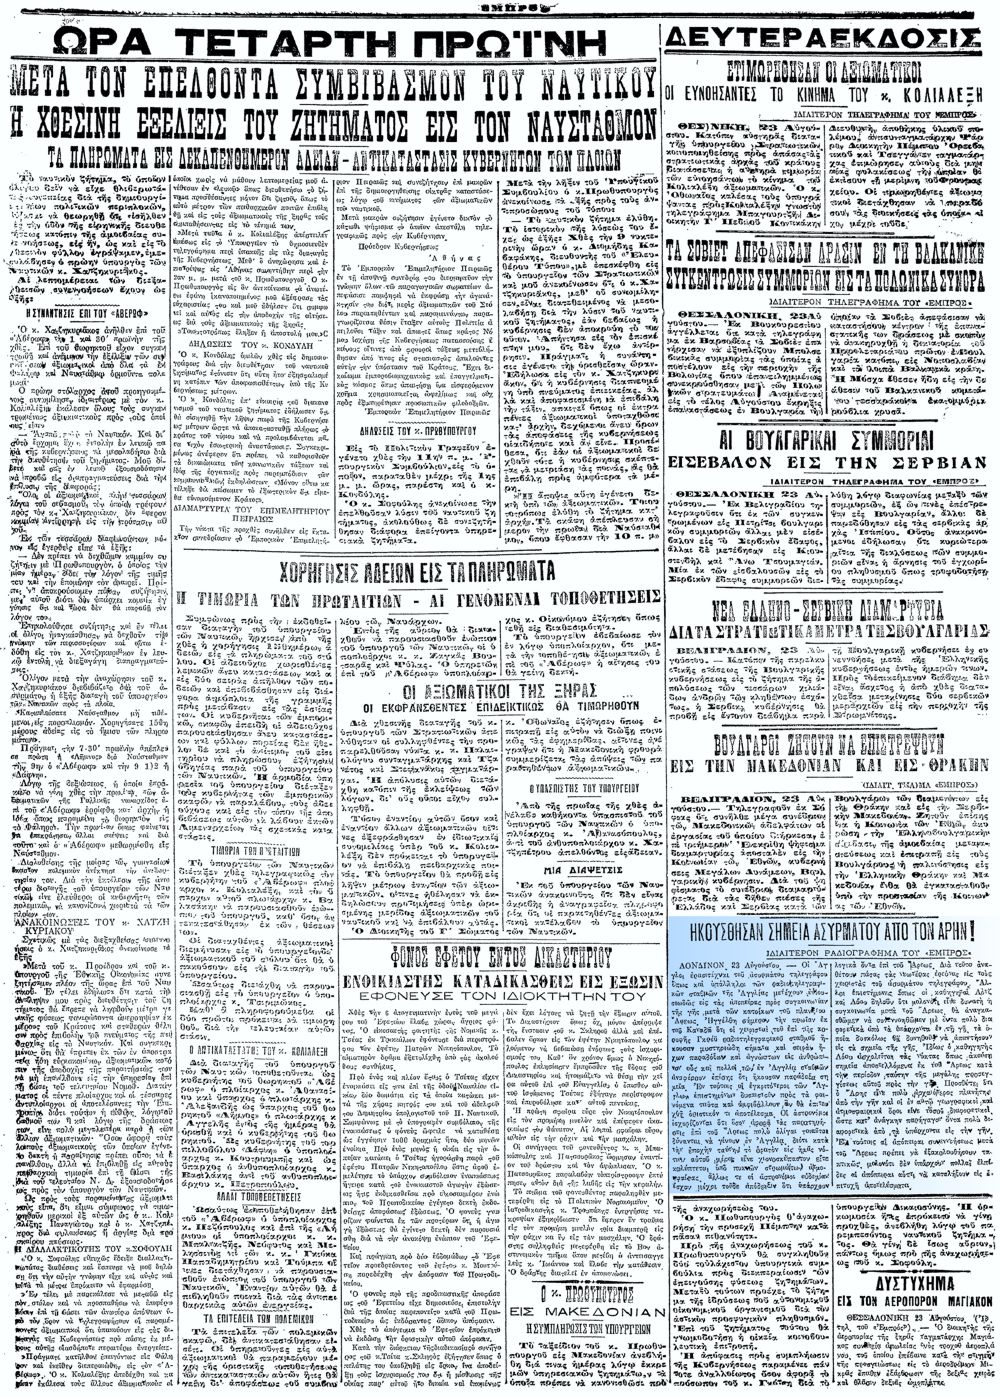 Το άρθρο, όπως δημοσιεύθηκε στην εφημερίδα "ΕΜΠΡΟΣ", στις 24/08/1924